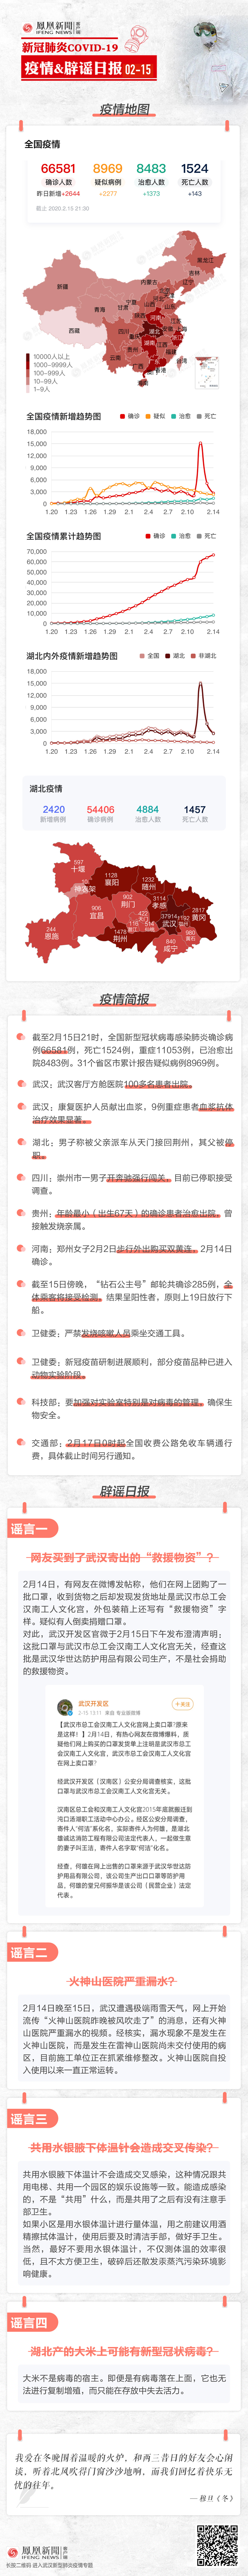 2月15日辟谣日报| 网友买到了武汉寄出的“救援物资”？假的